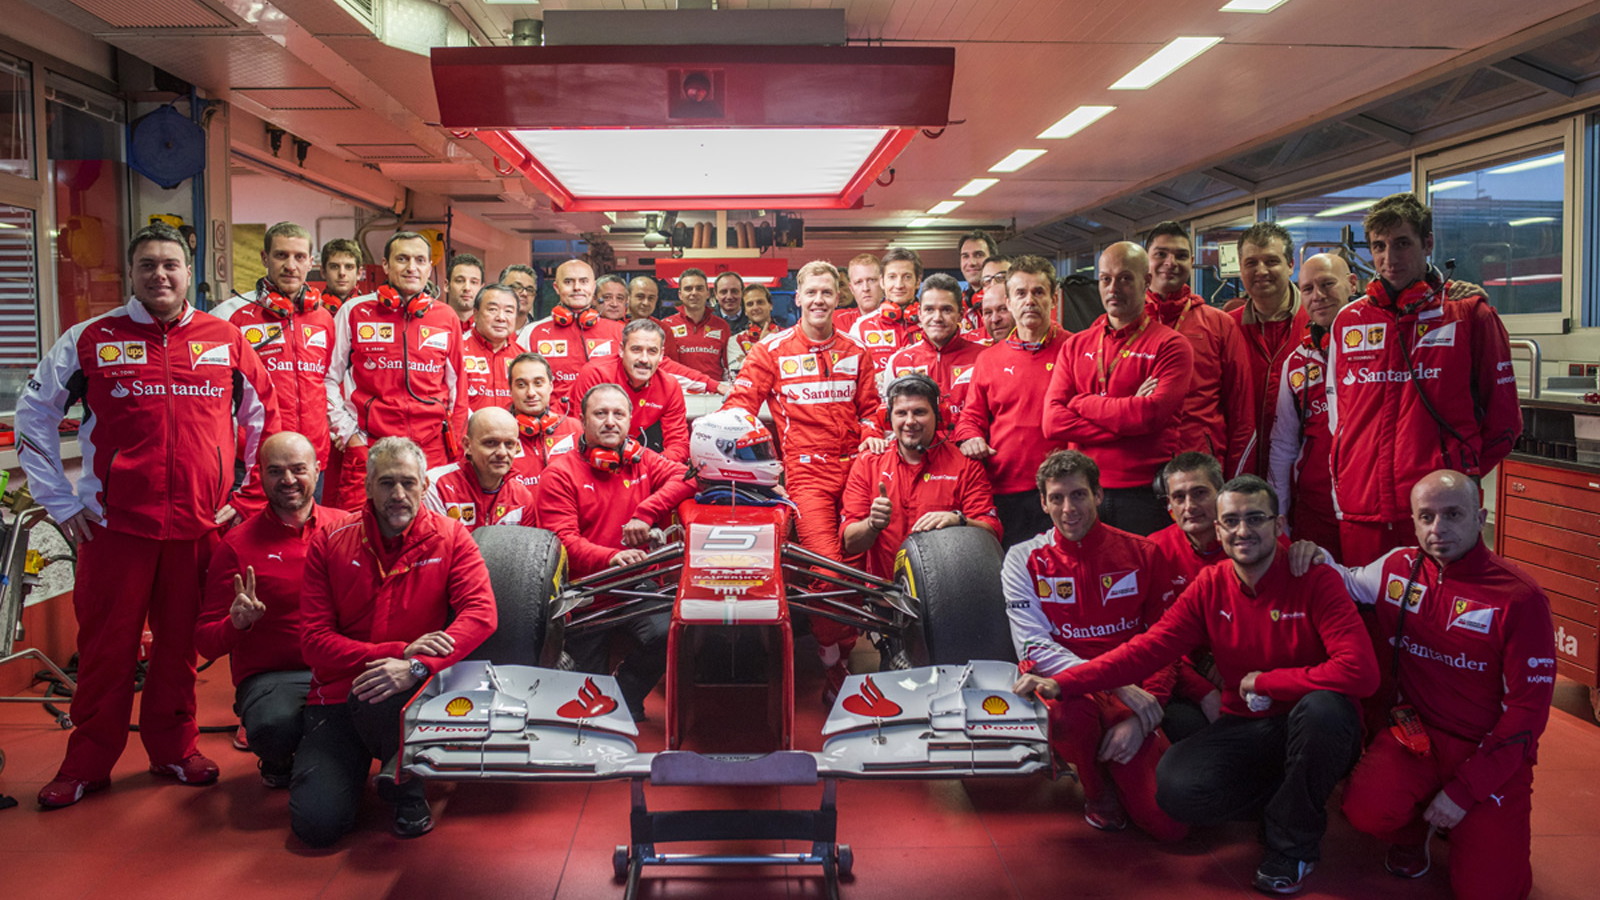 Sebastian Vettel’s first days at Ferrari